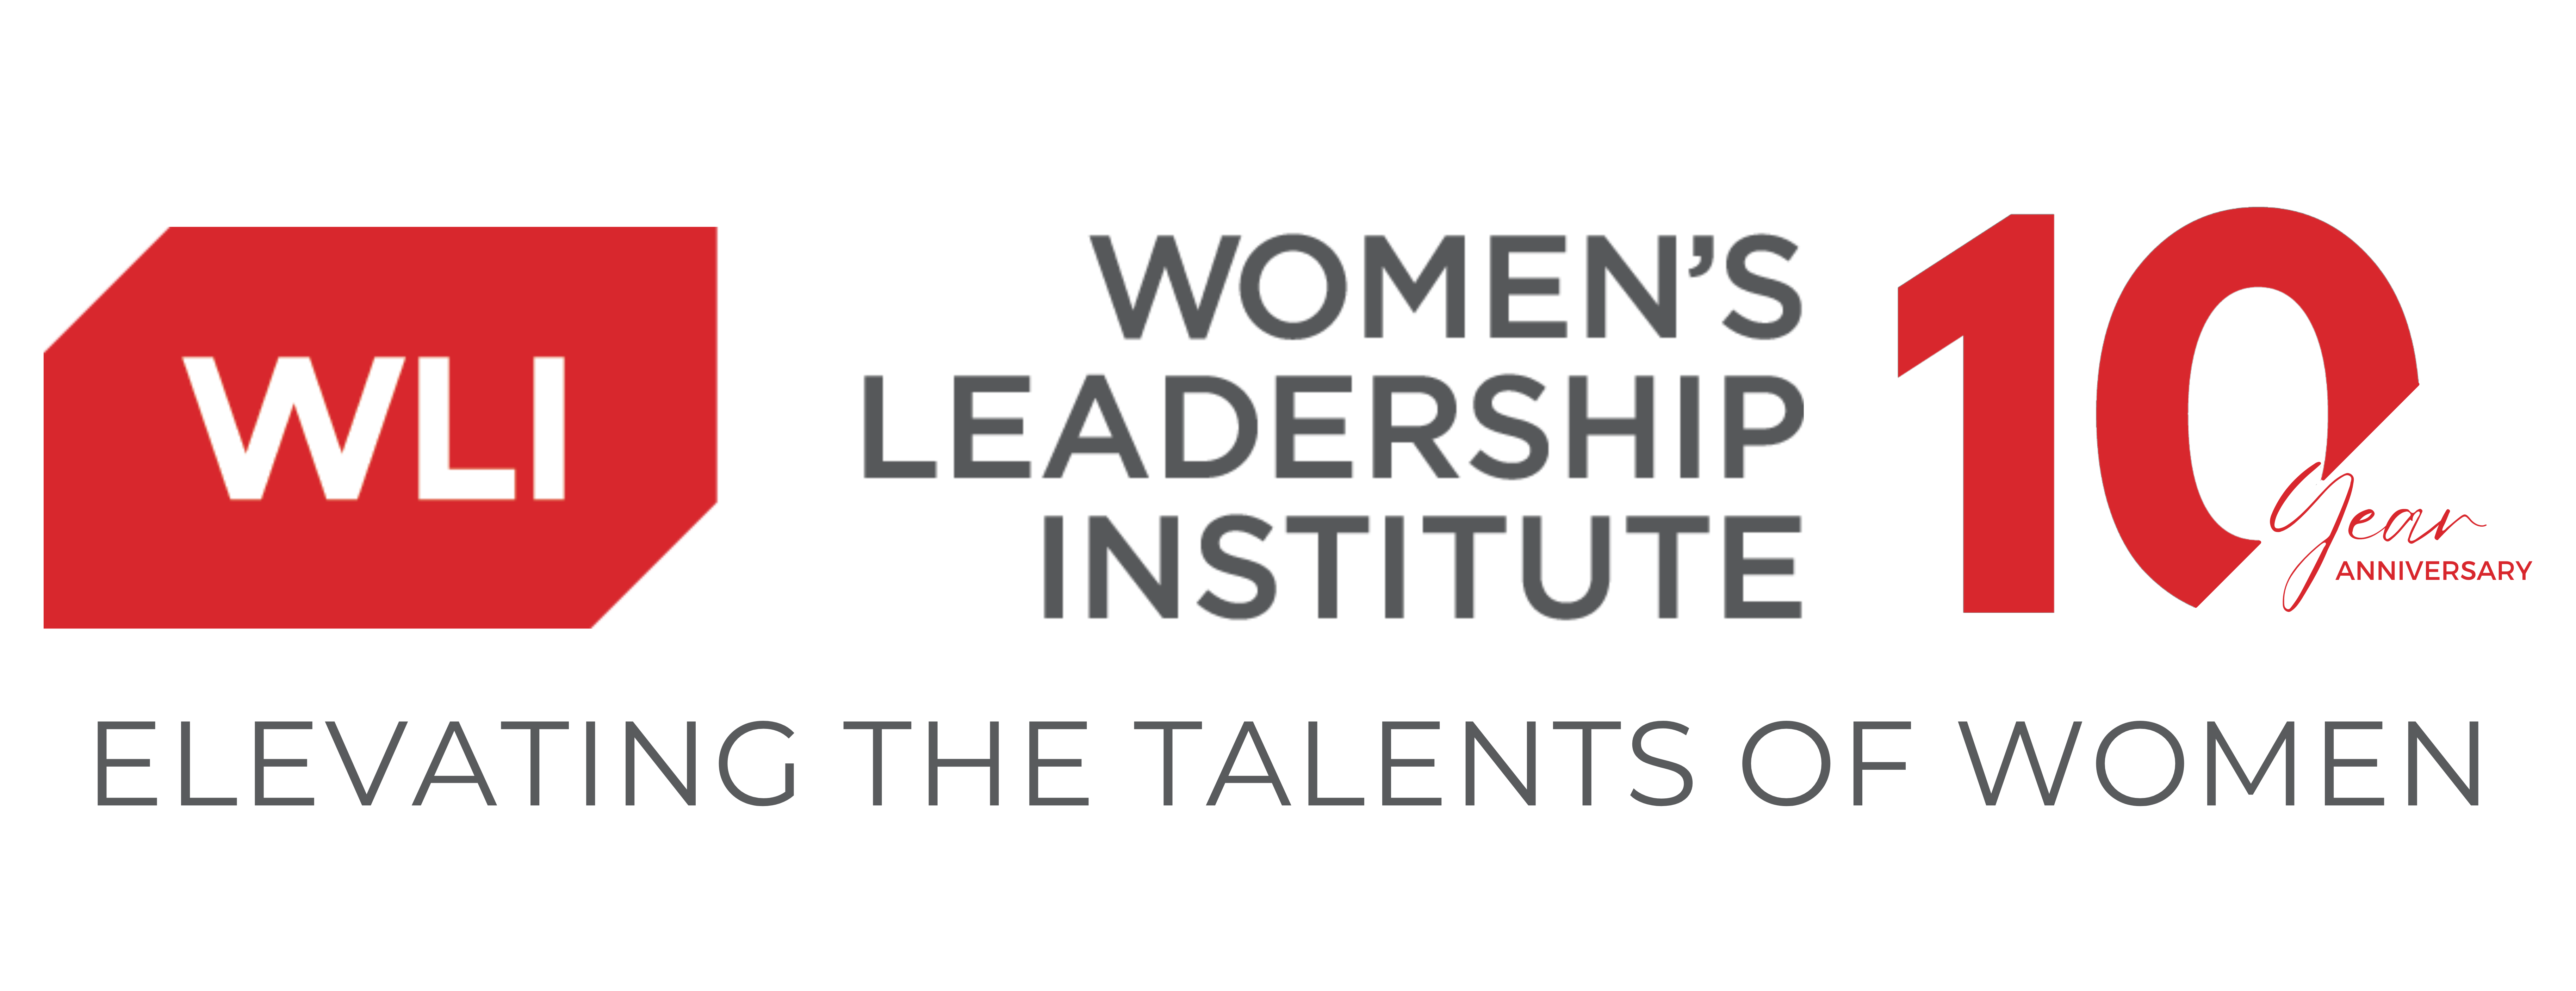 Women's Leadership Institute